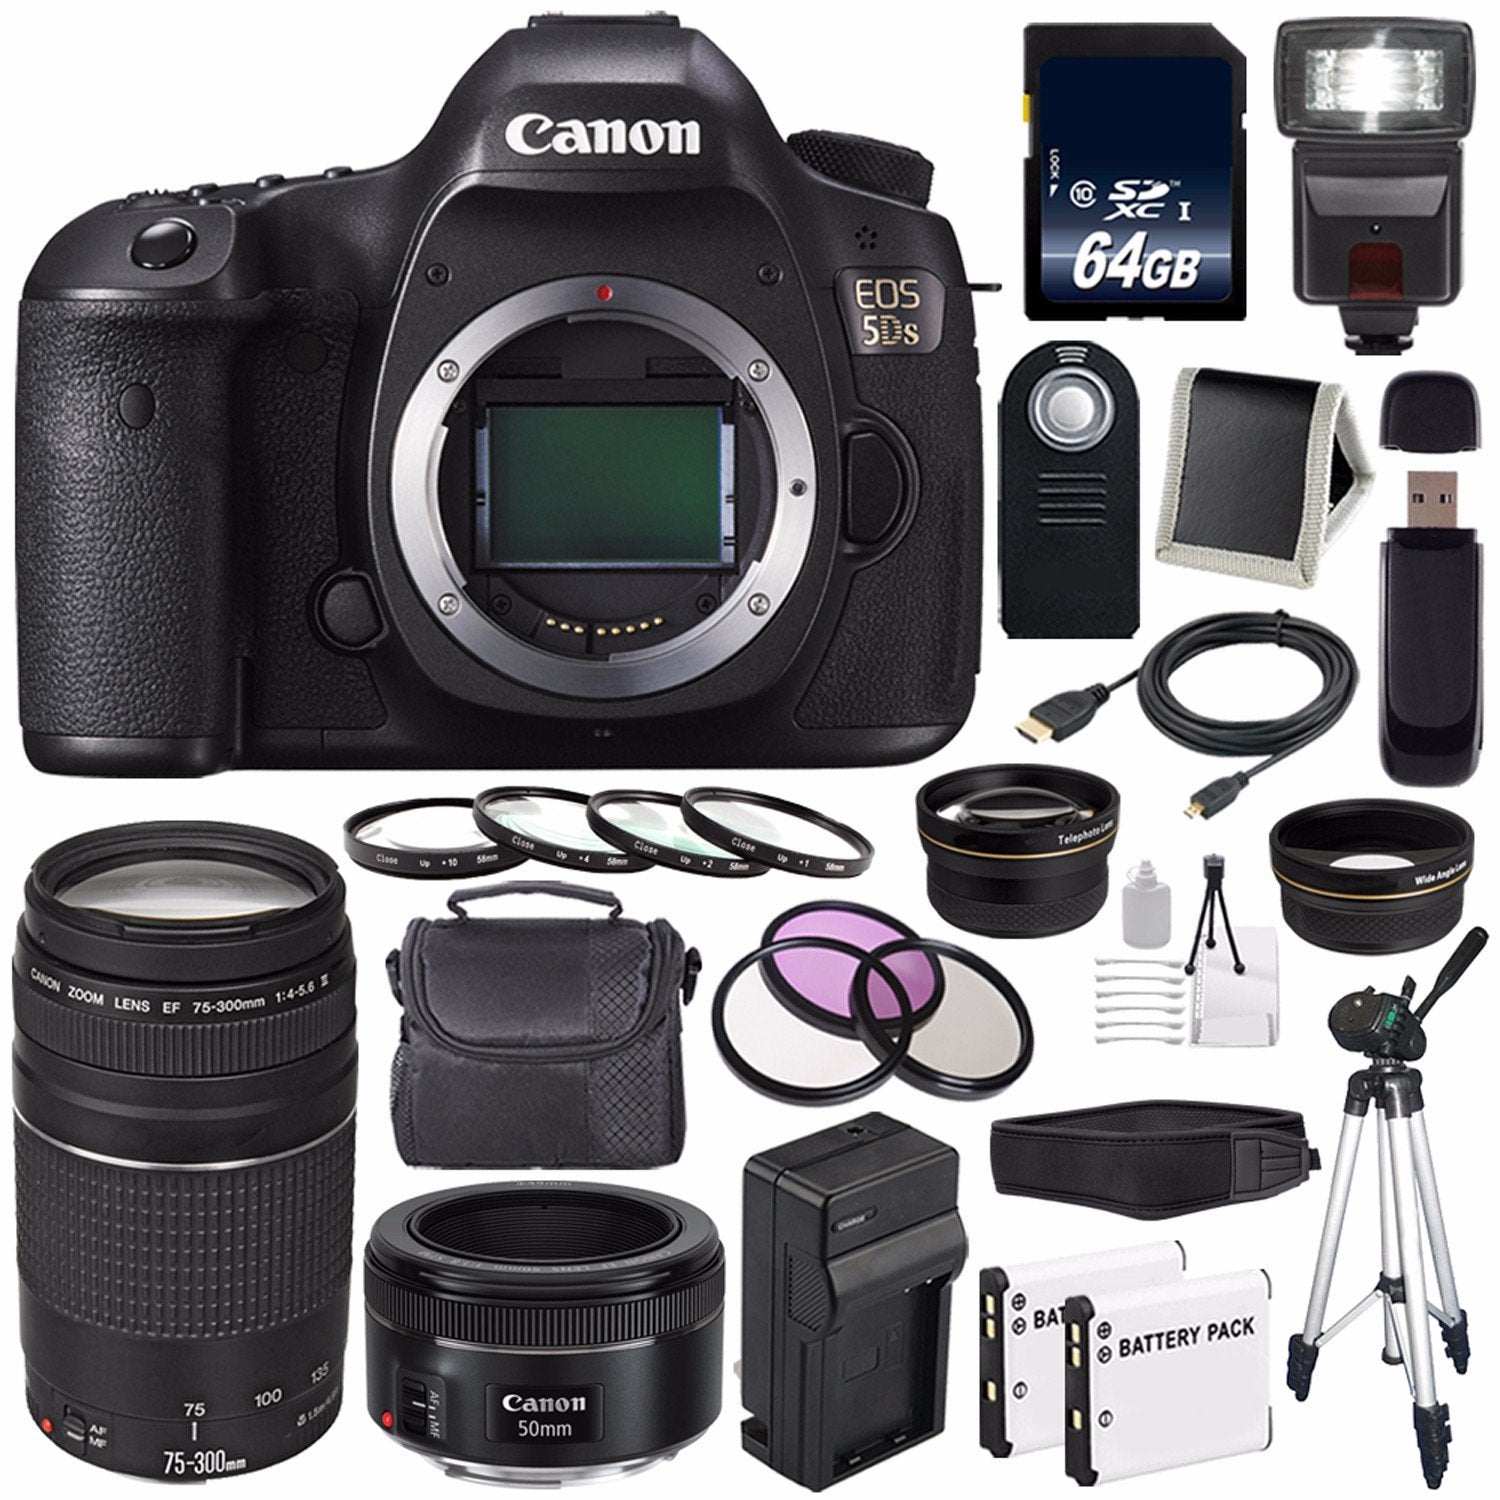 Canon EOS 5DS DSLR Camera (International Model) 0581C002 + Canon EF 75-300 III+ EF 50mm f/1.8 STM Lens Base Bundle